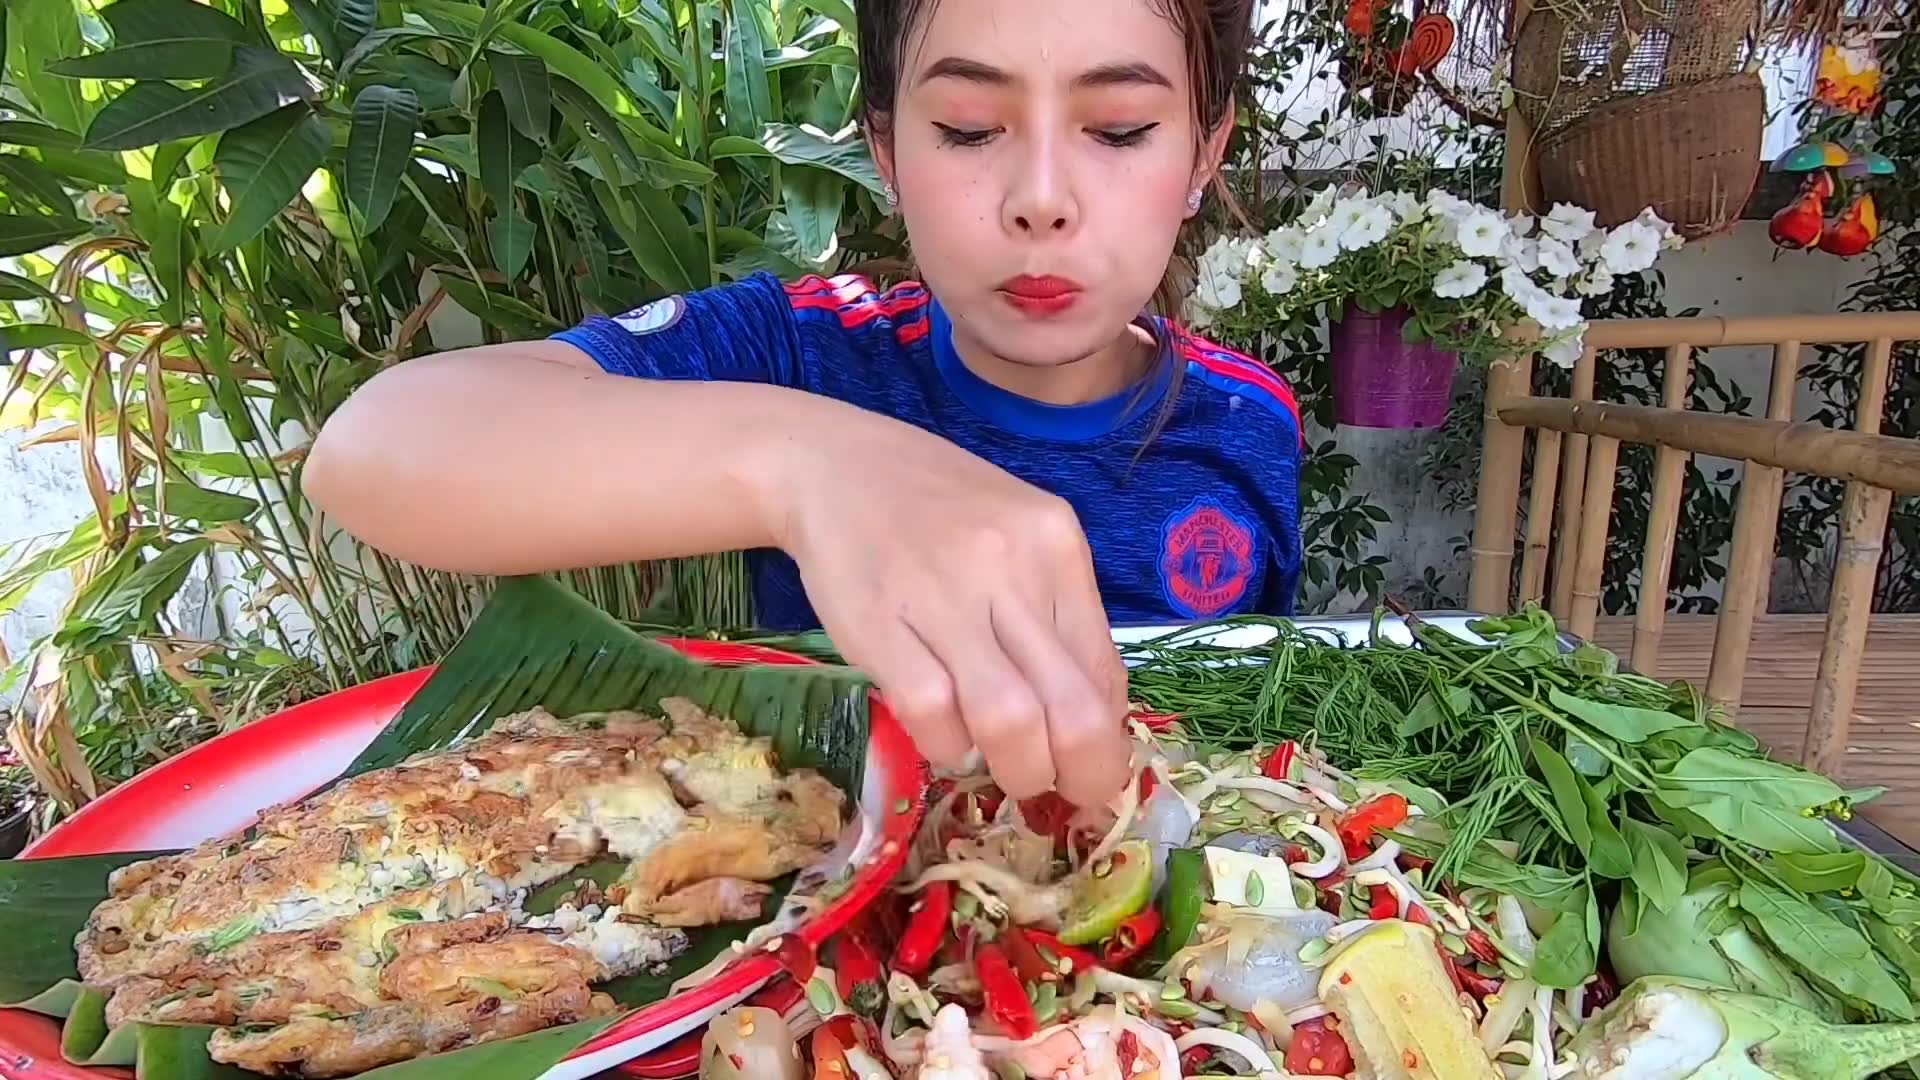 曼谷“泰”美味 | 泰式美食小吃最强攻略